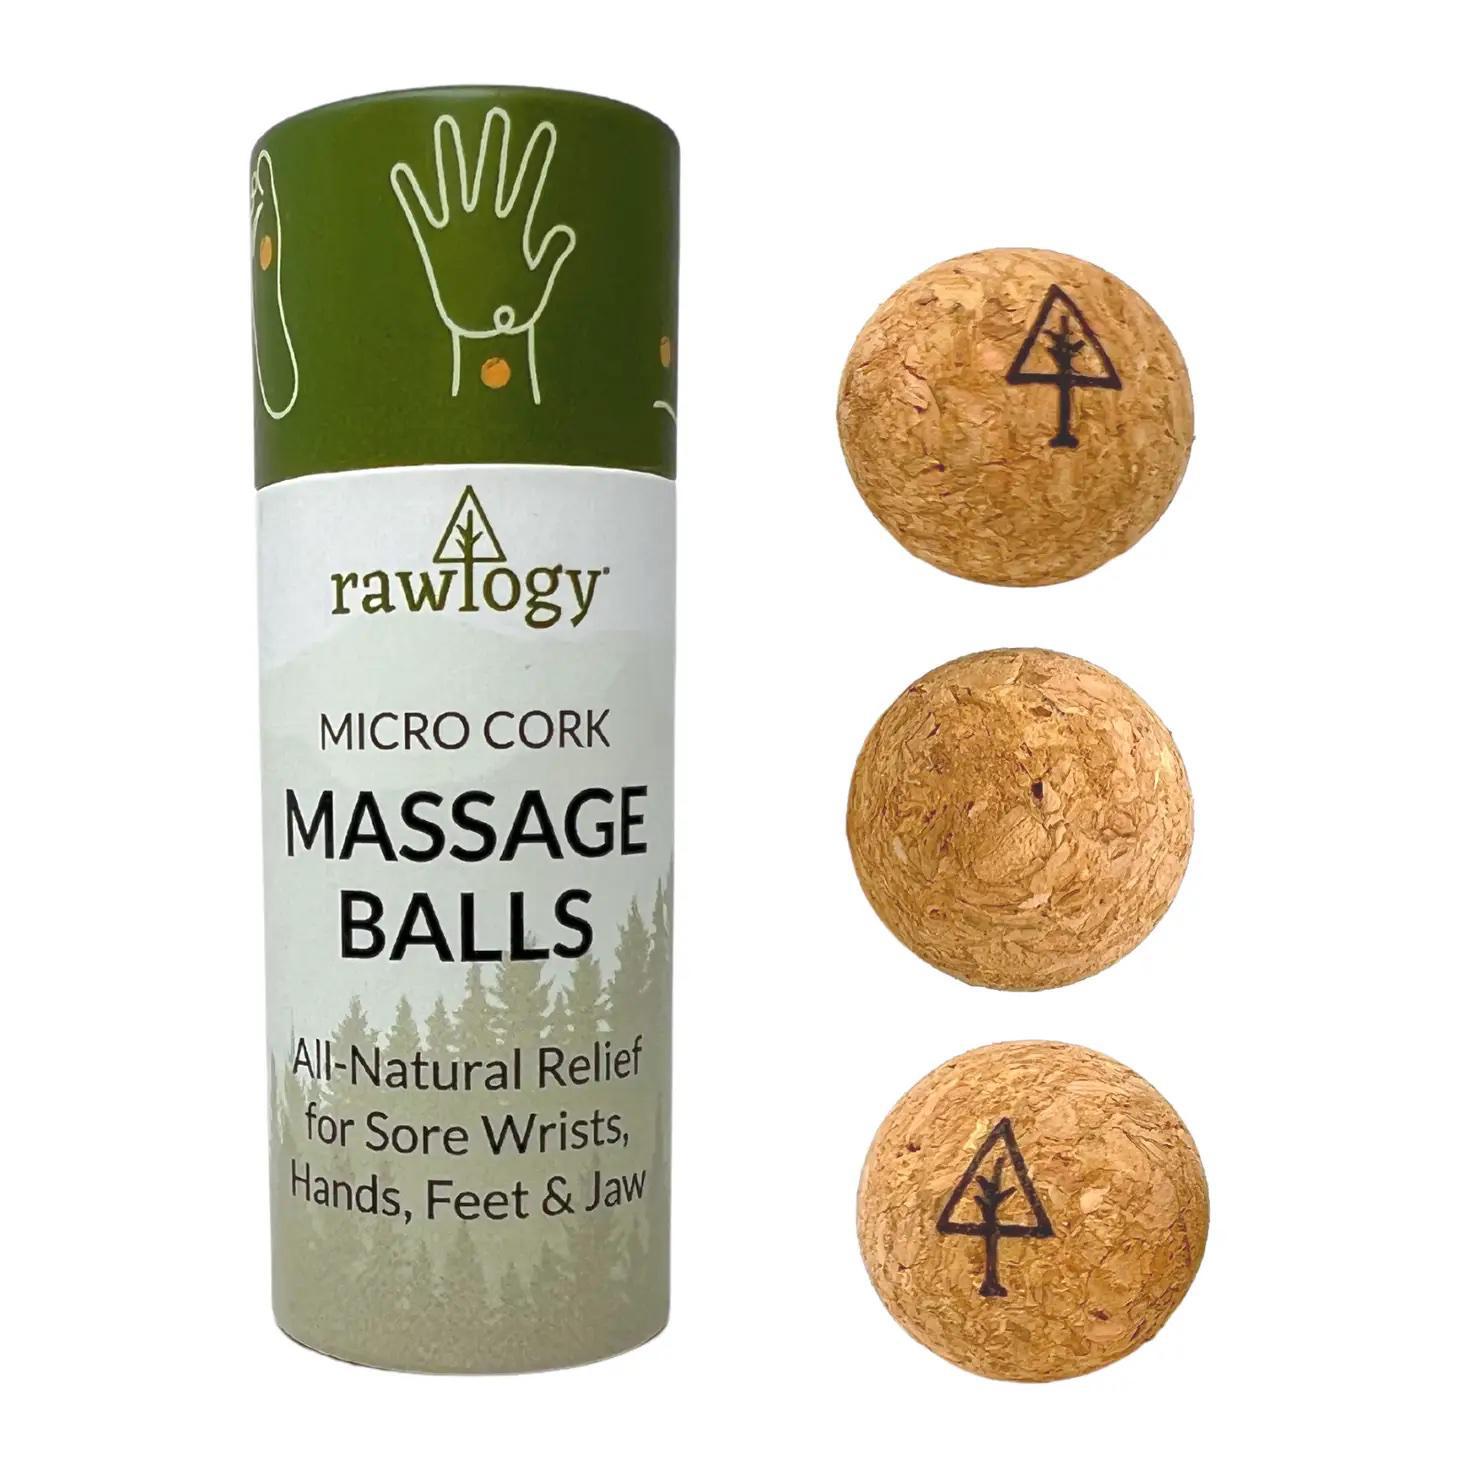 Rawlogy Micro Cork Massage Balls – 3 Balls